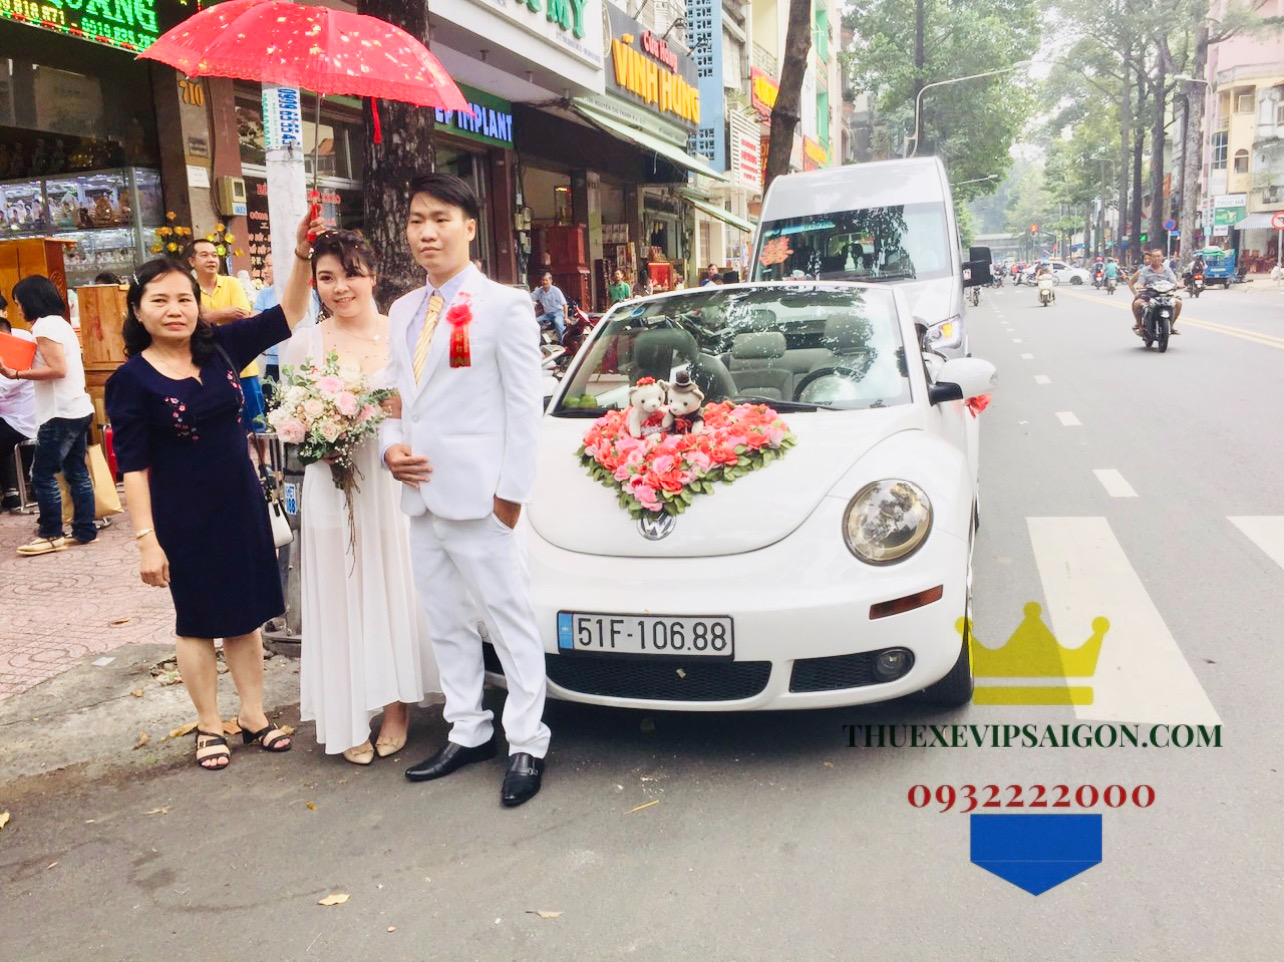 Vip Cars Bảo Dương cho thuê xe cưới ngày 1 tháng 12 năm 2020